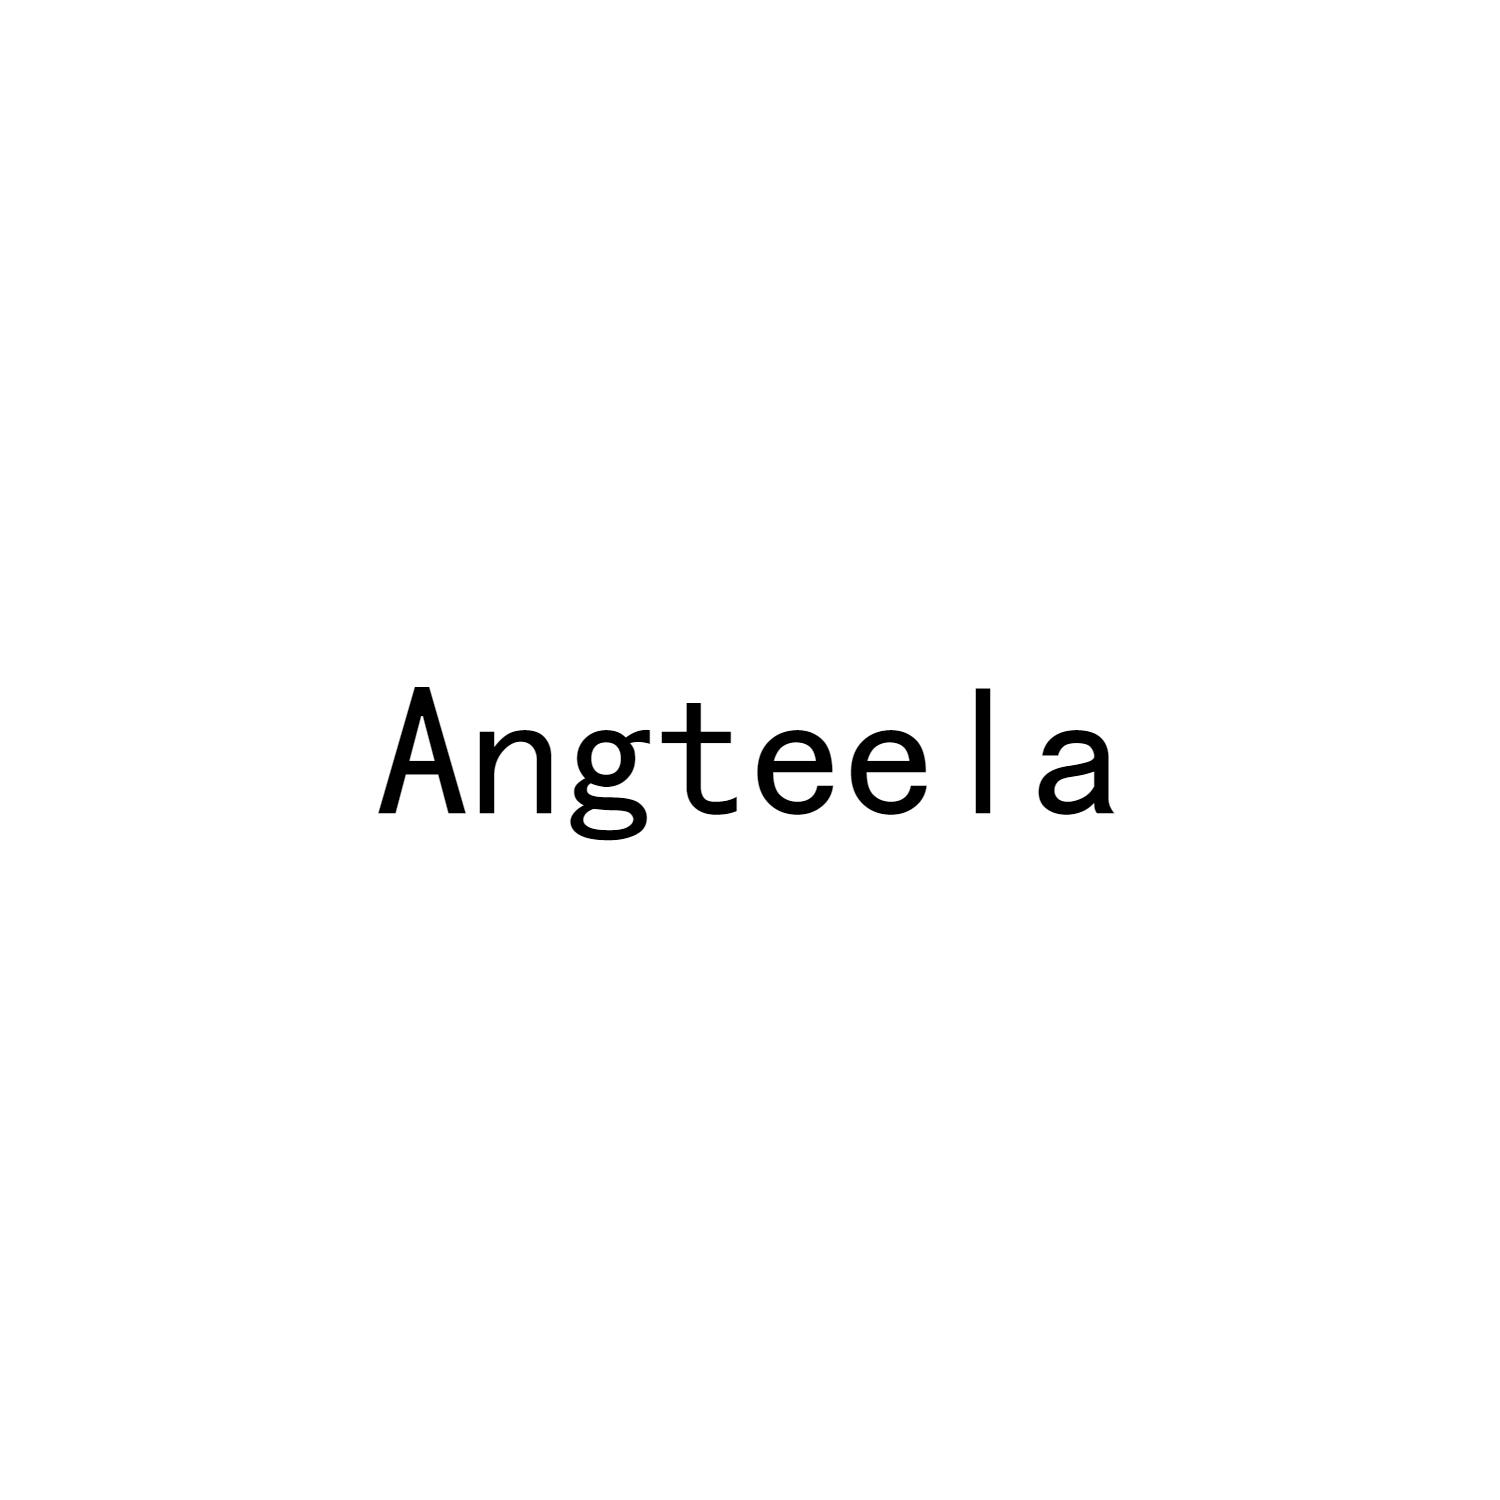 ANGTEELA